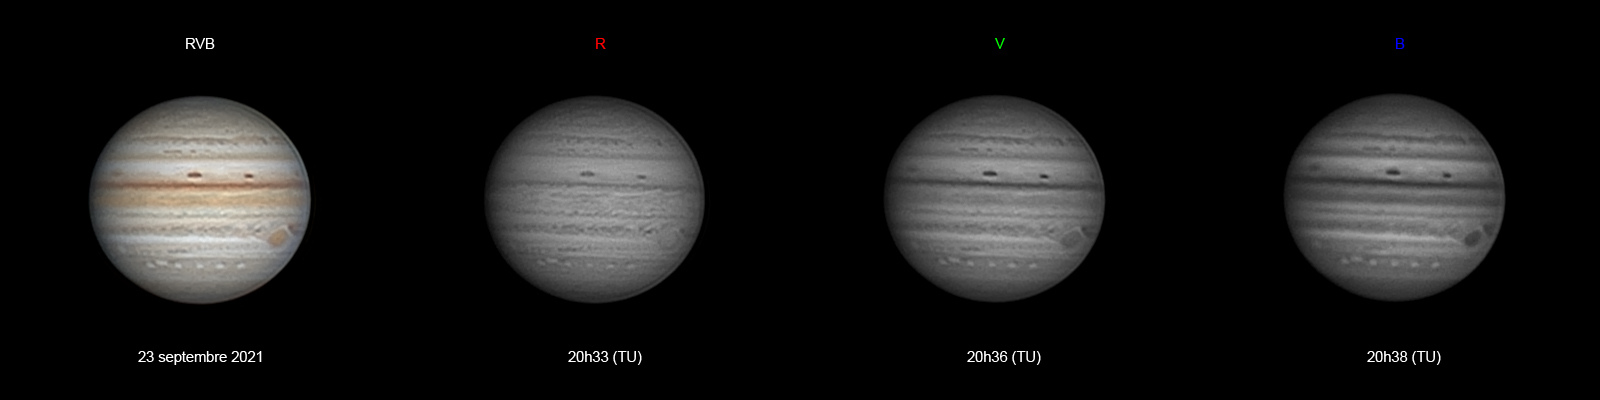 Jupiter-20210923-ba_RVB-Planche-AS.jpg.1fa62f8513a5986acf08f13664e9b837.jpg